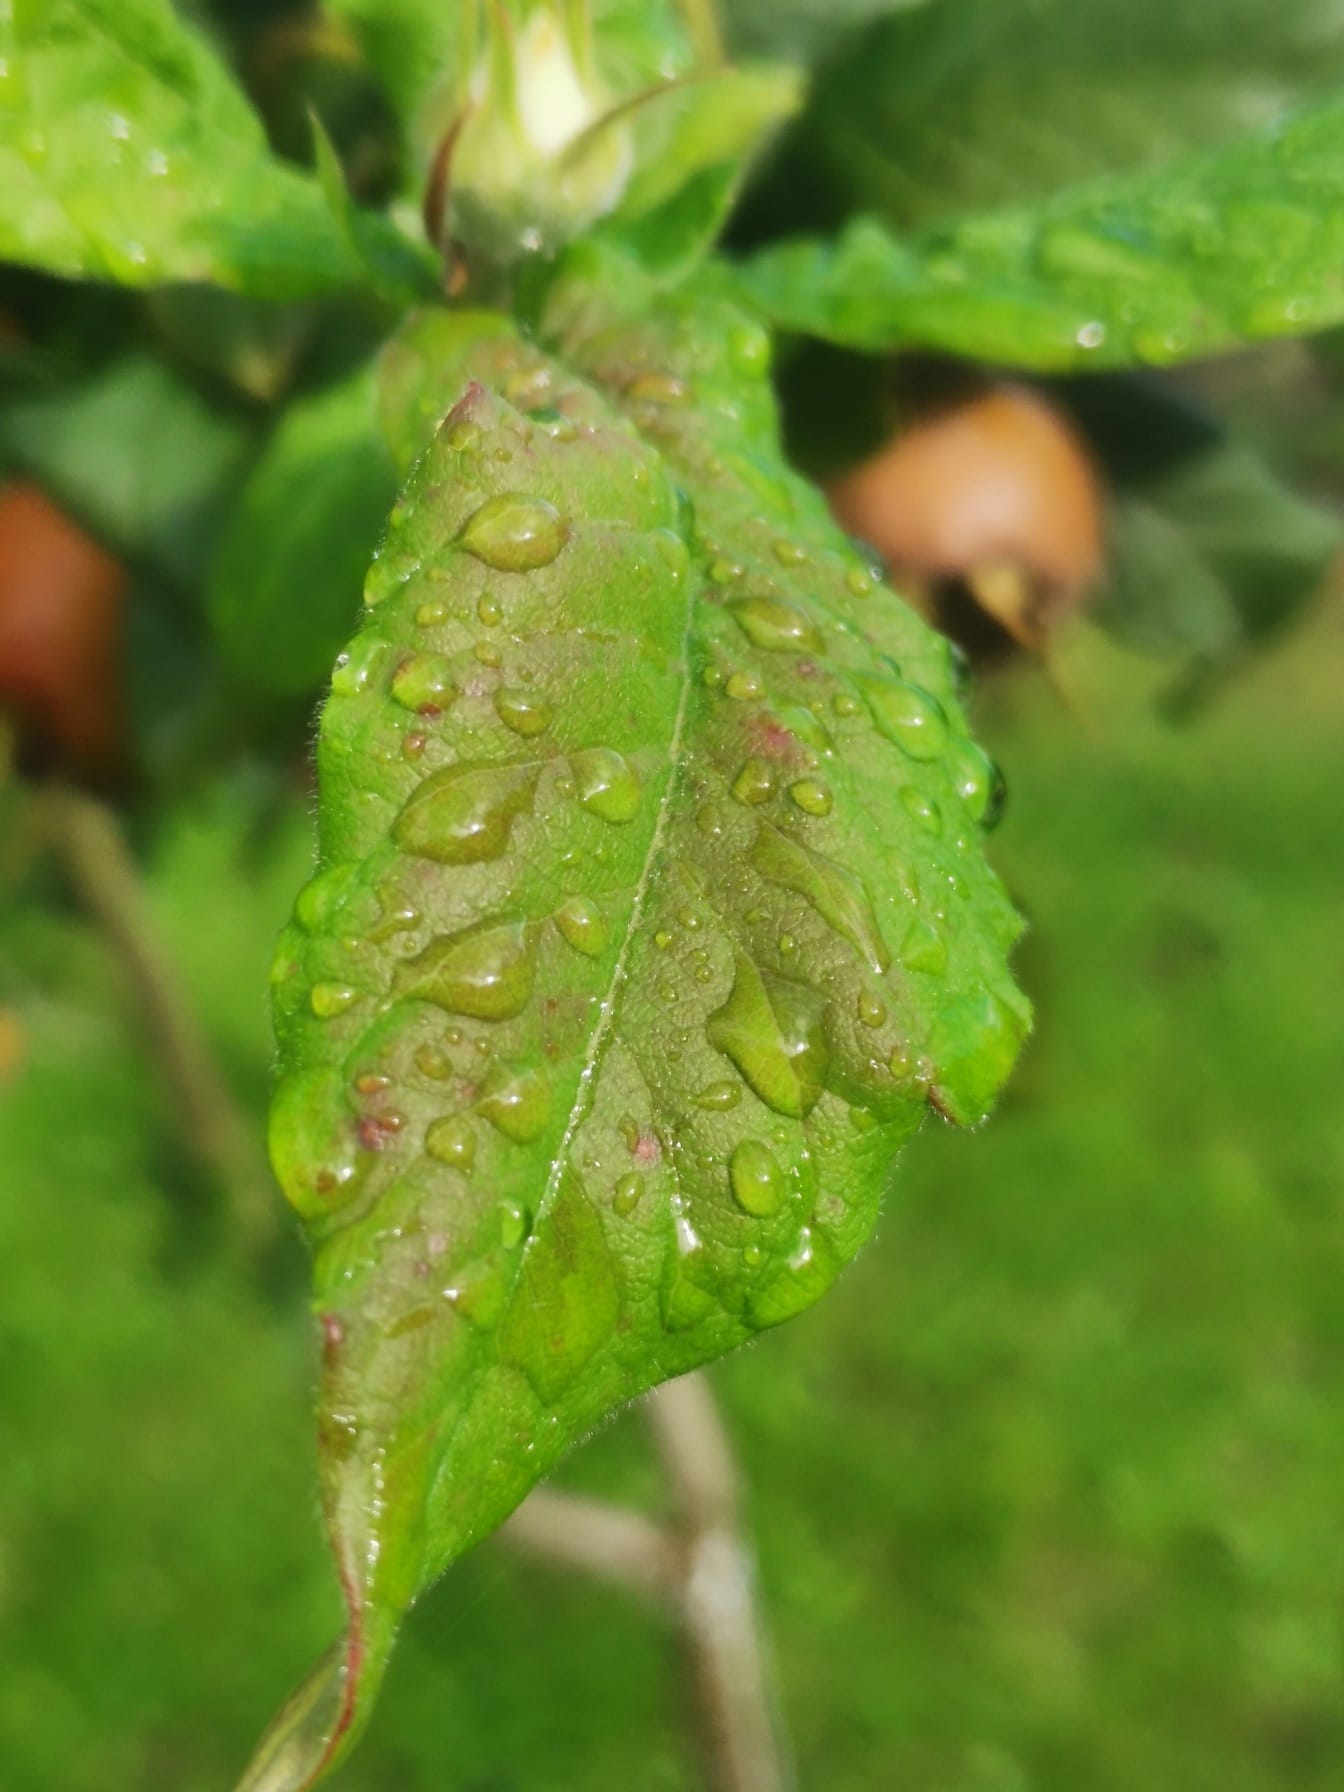 Wassertropfen auf grünlich-gelbem Blatt Nahaufnahme eines nassen Blattes